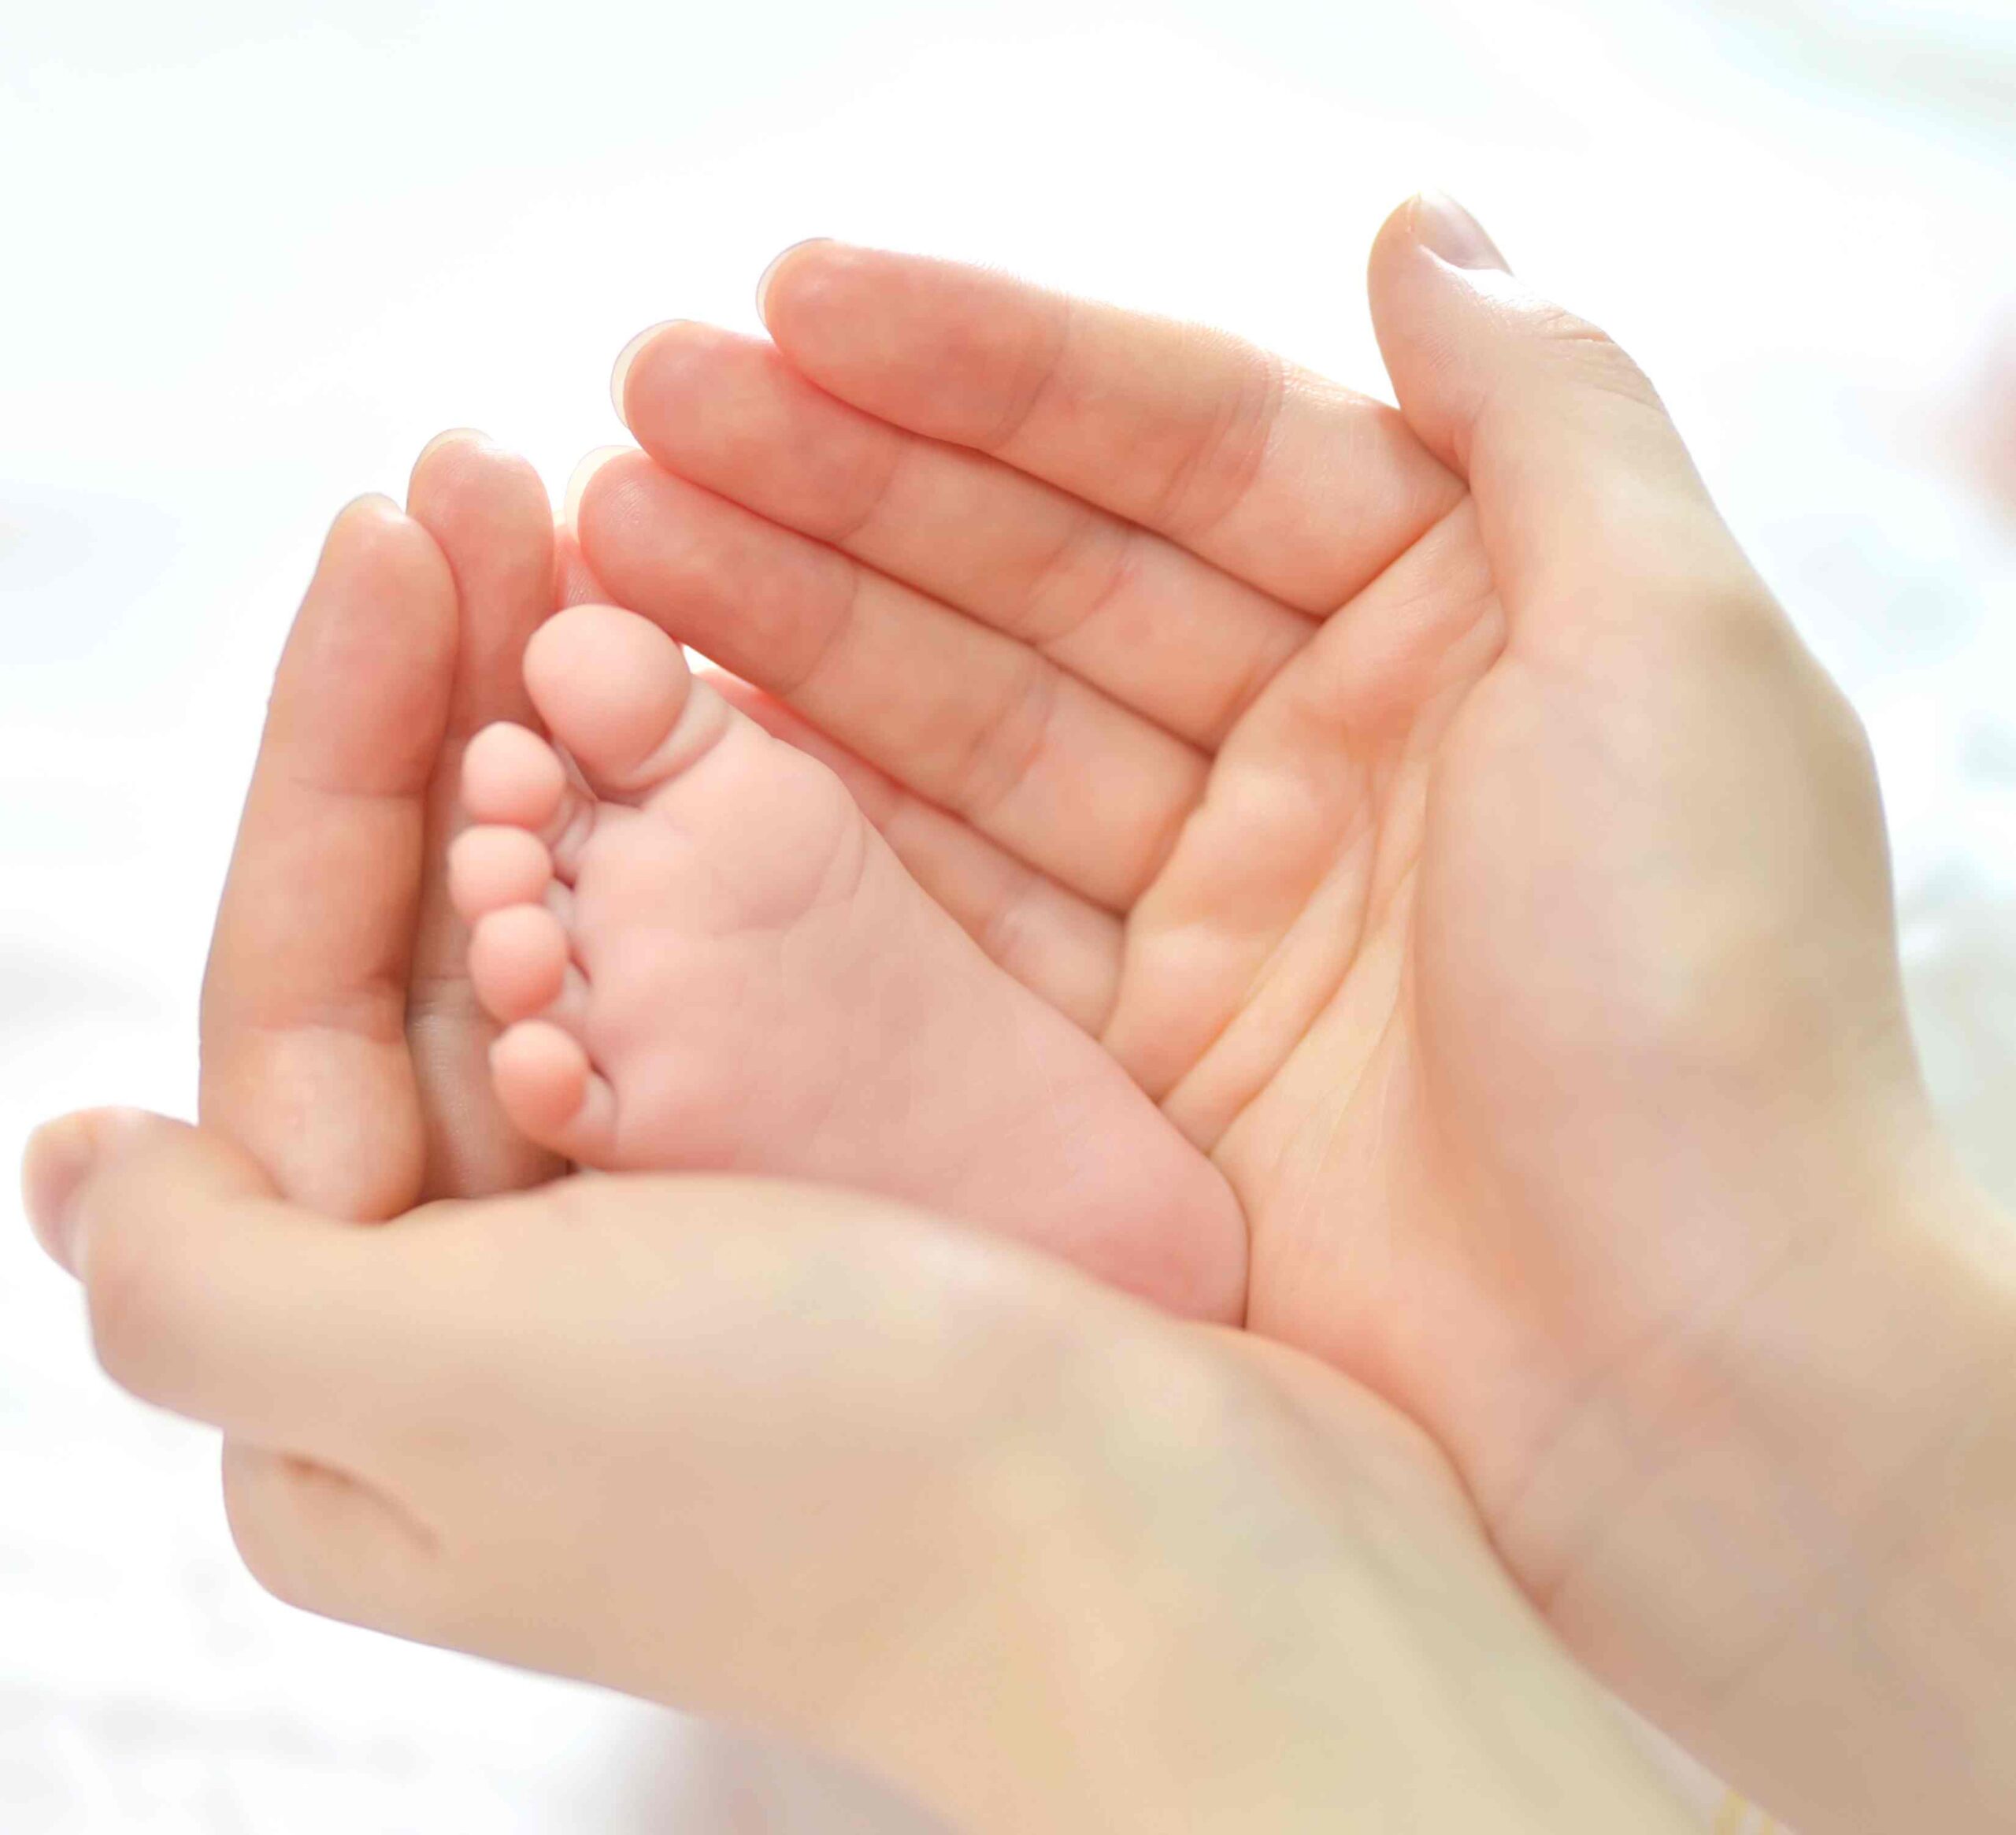 baby-feet-mother-hands (1)